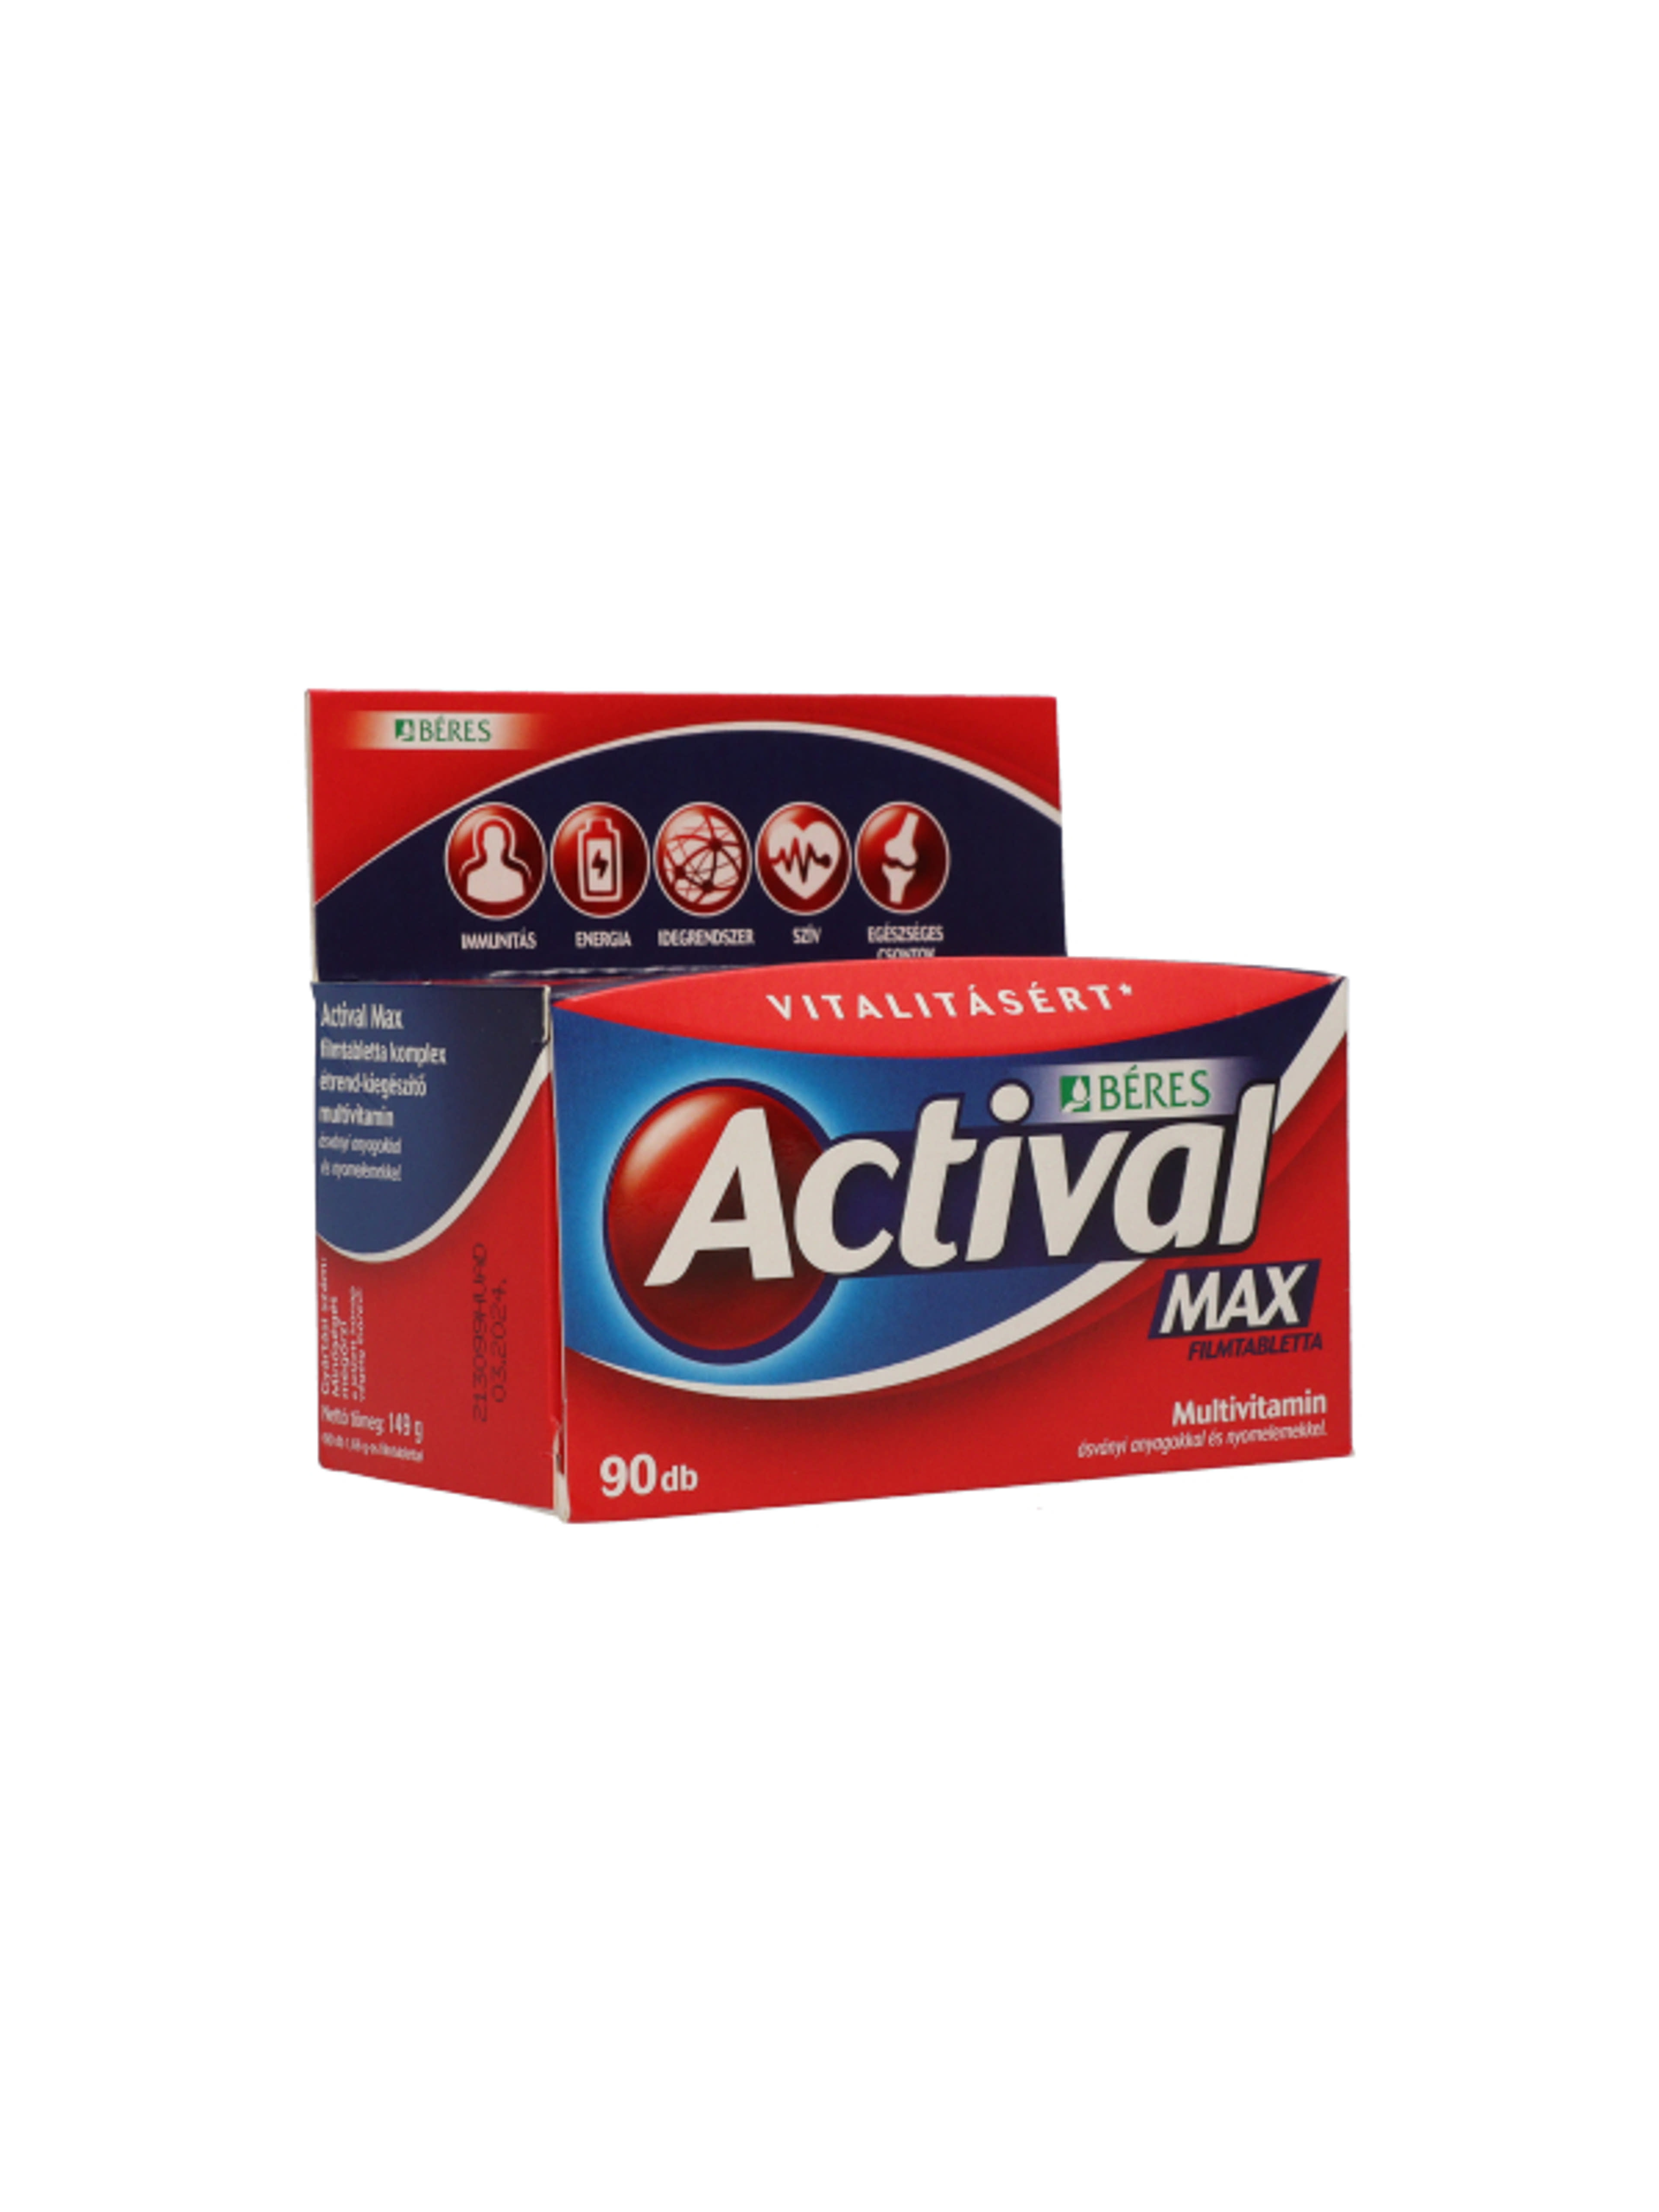 Actival Max tabletta - 90 db-6